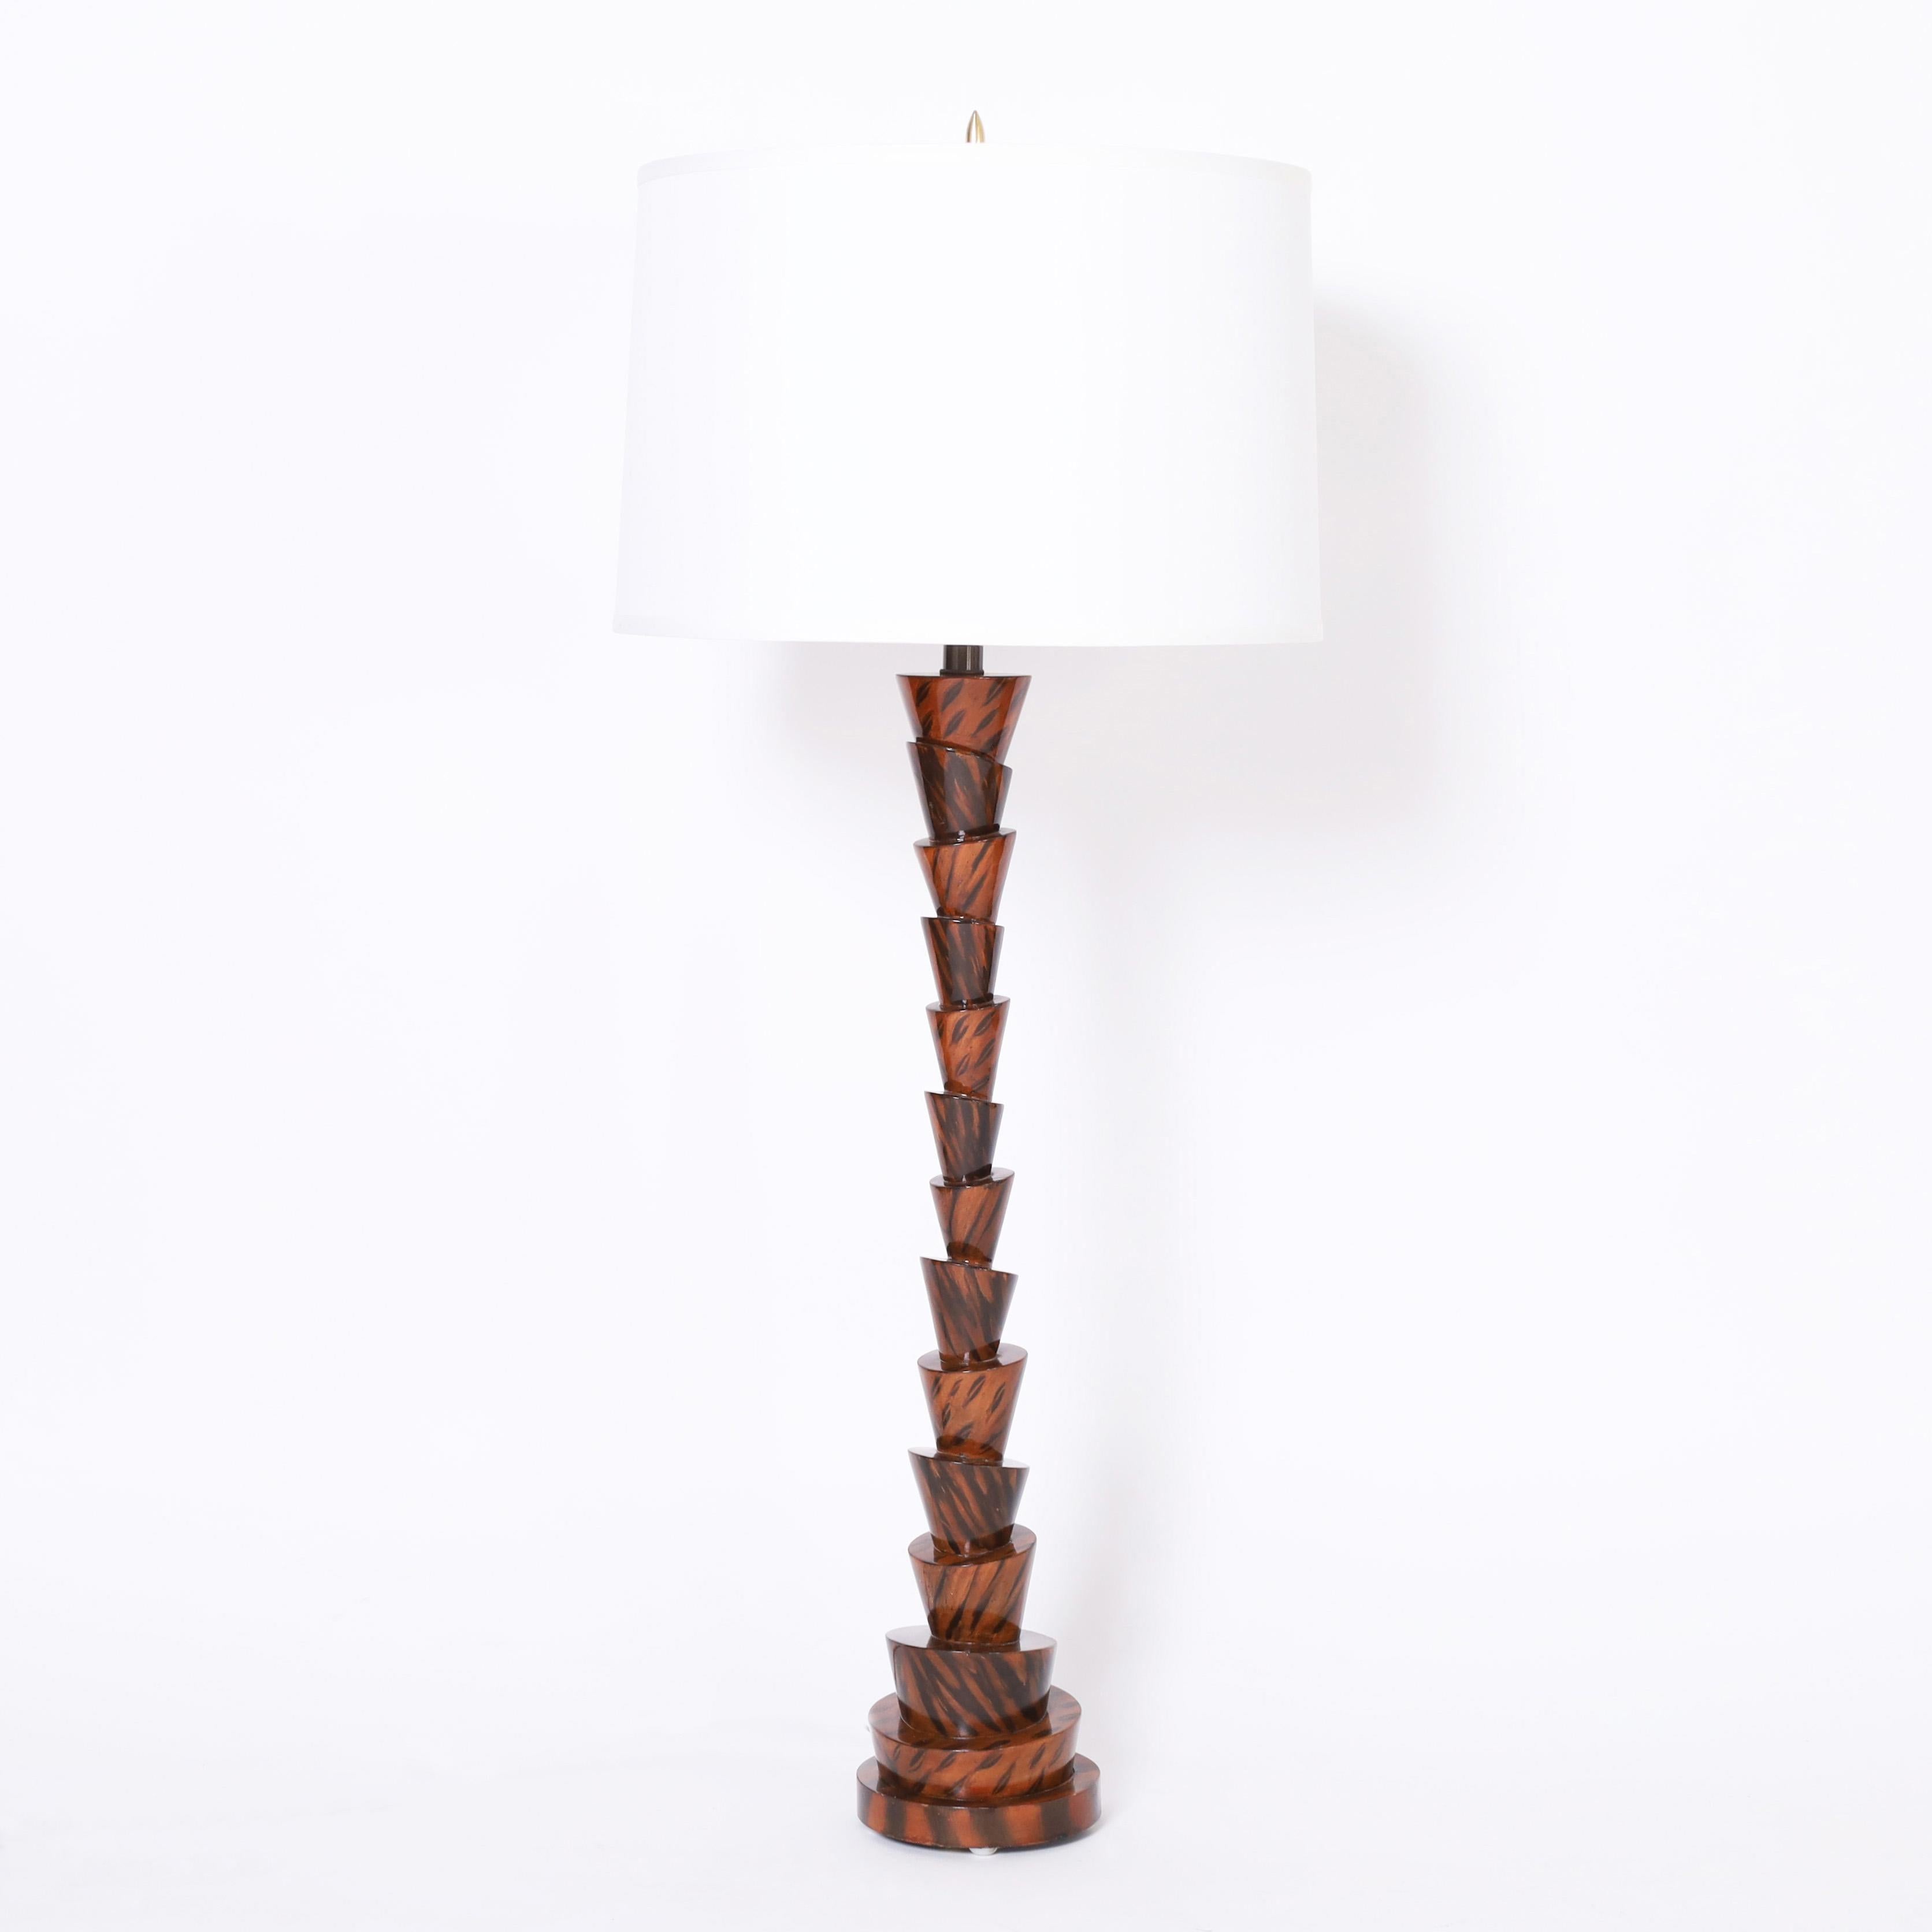 Paire de lampes de table inhabituelles fabriquées en composition dans une forme excentrique avec une finition en faux bois décorée à la main.